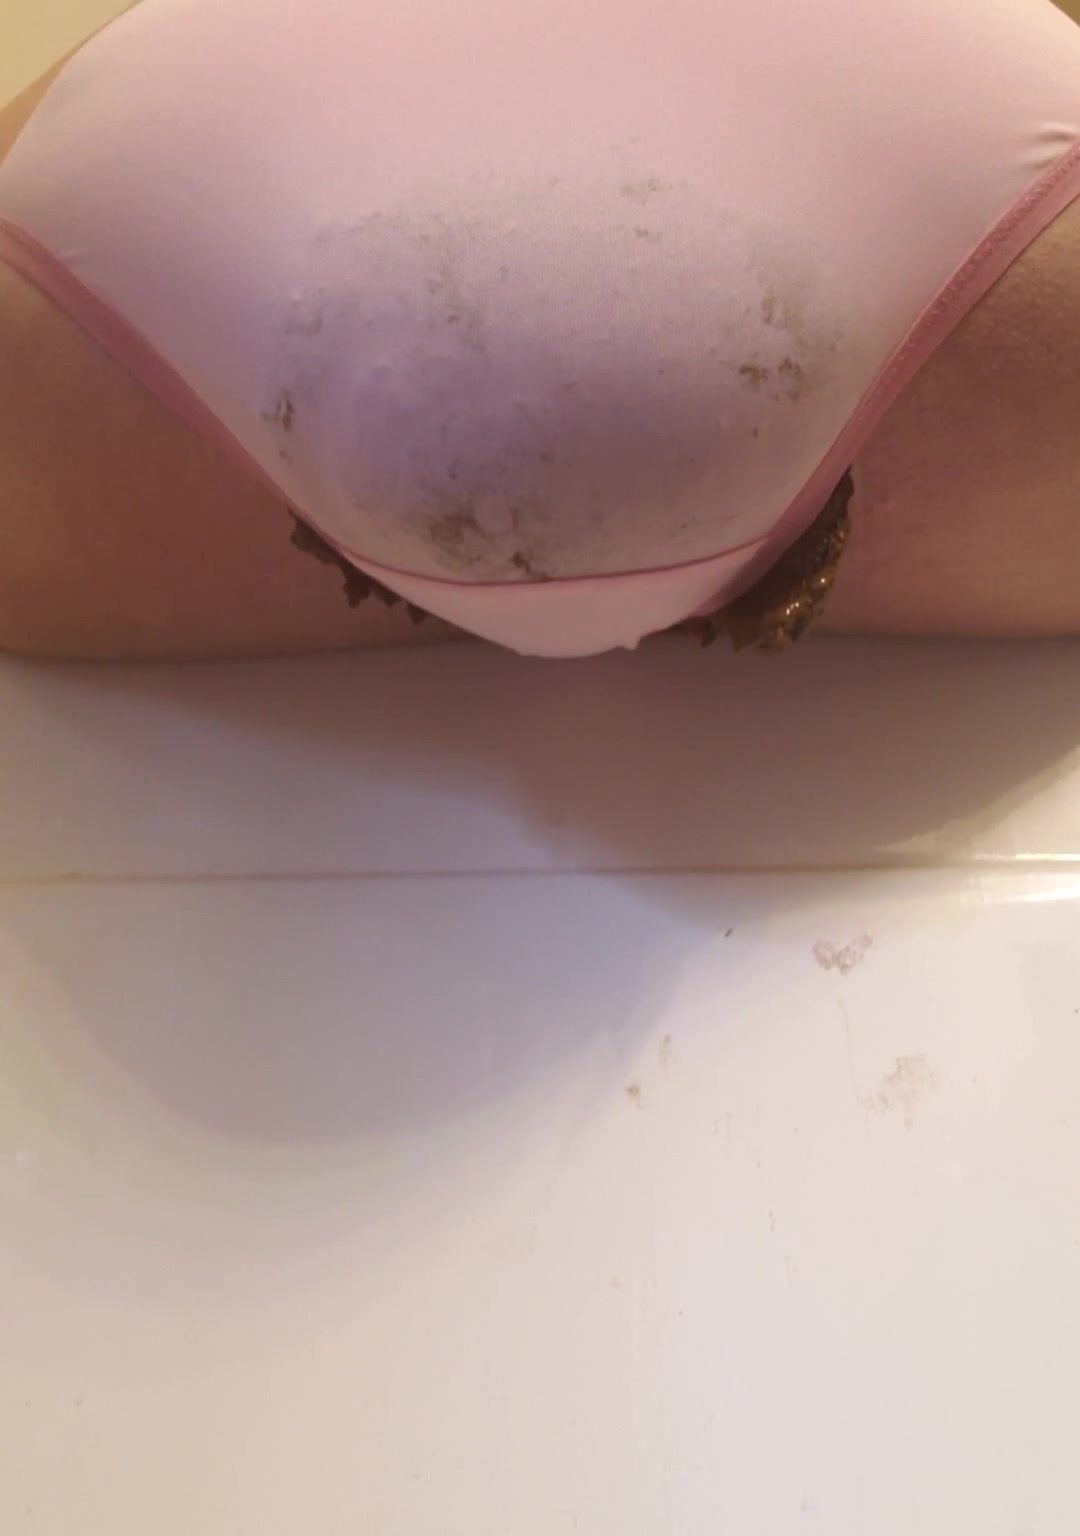 Huge Panty Poop - ThisVid.com